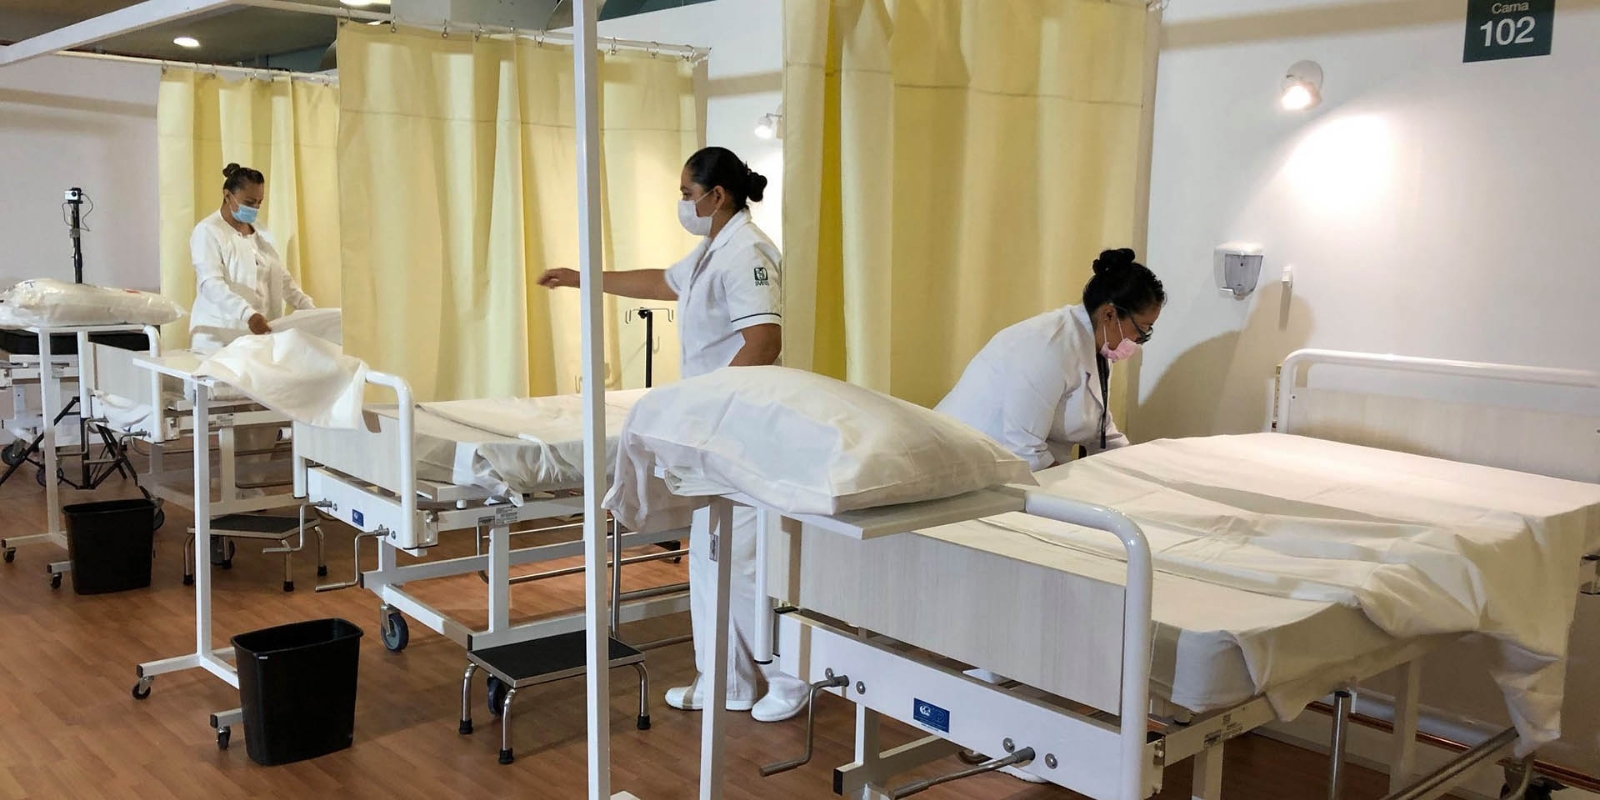 Las camas para atender pacientes con COVID-19 se encuentran disponibles